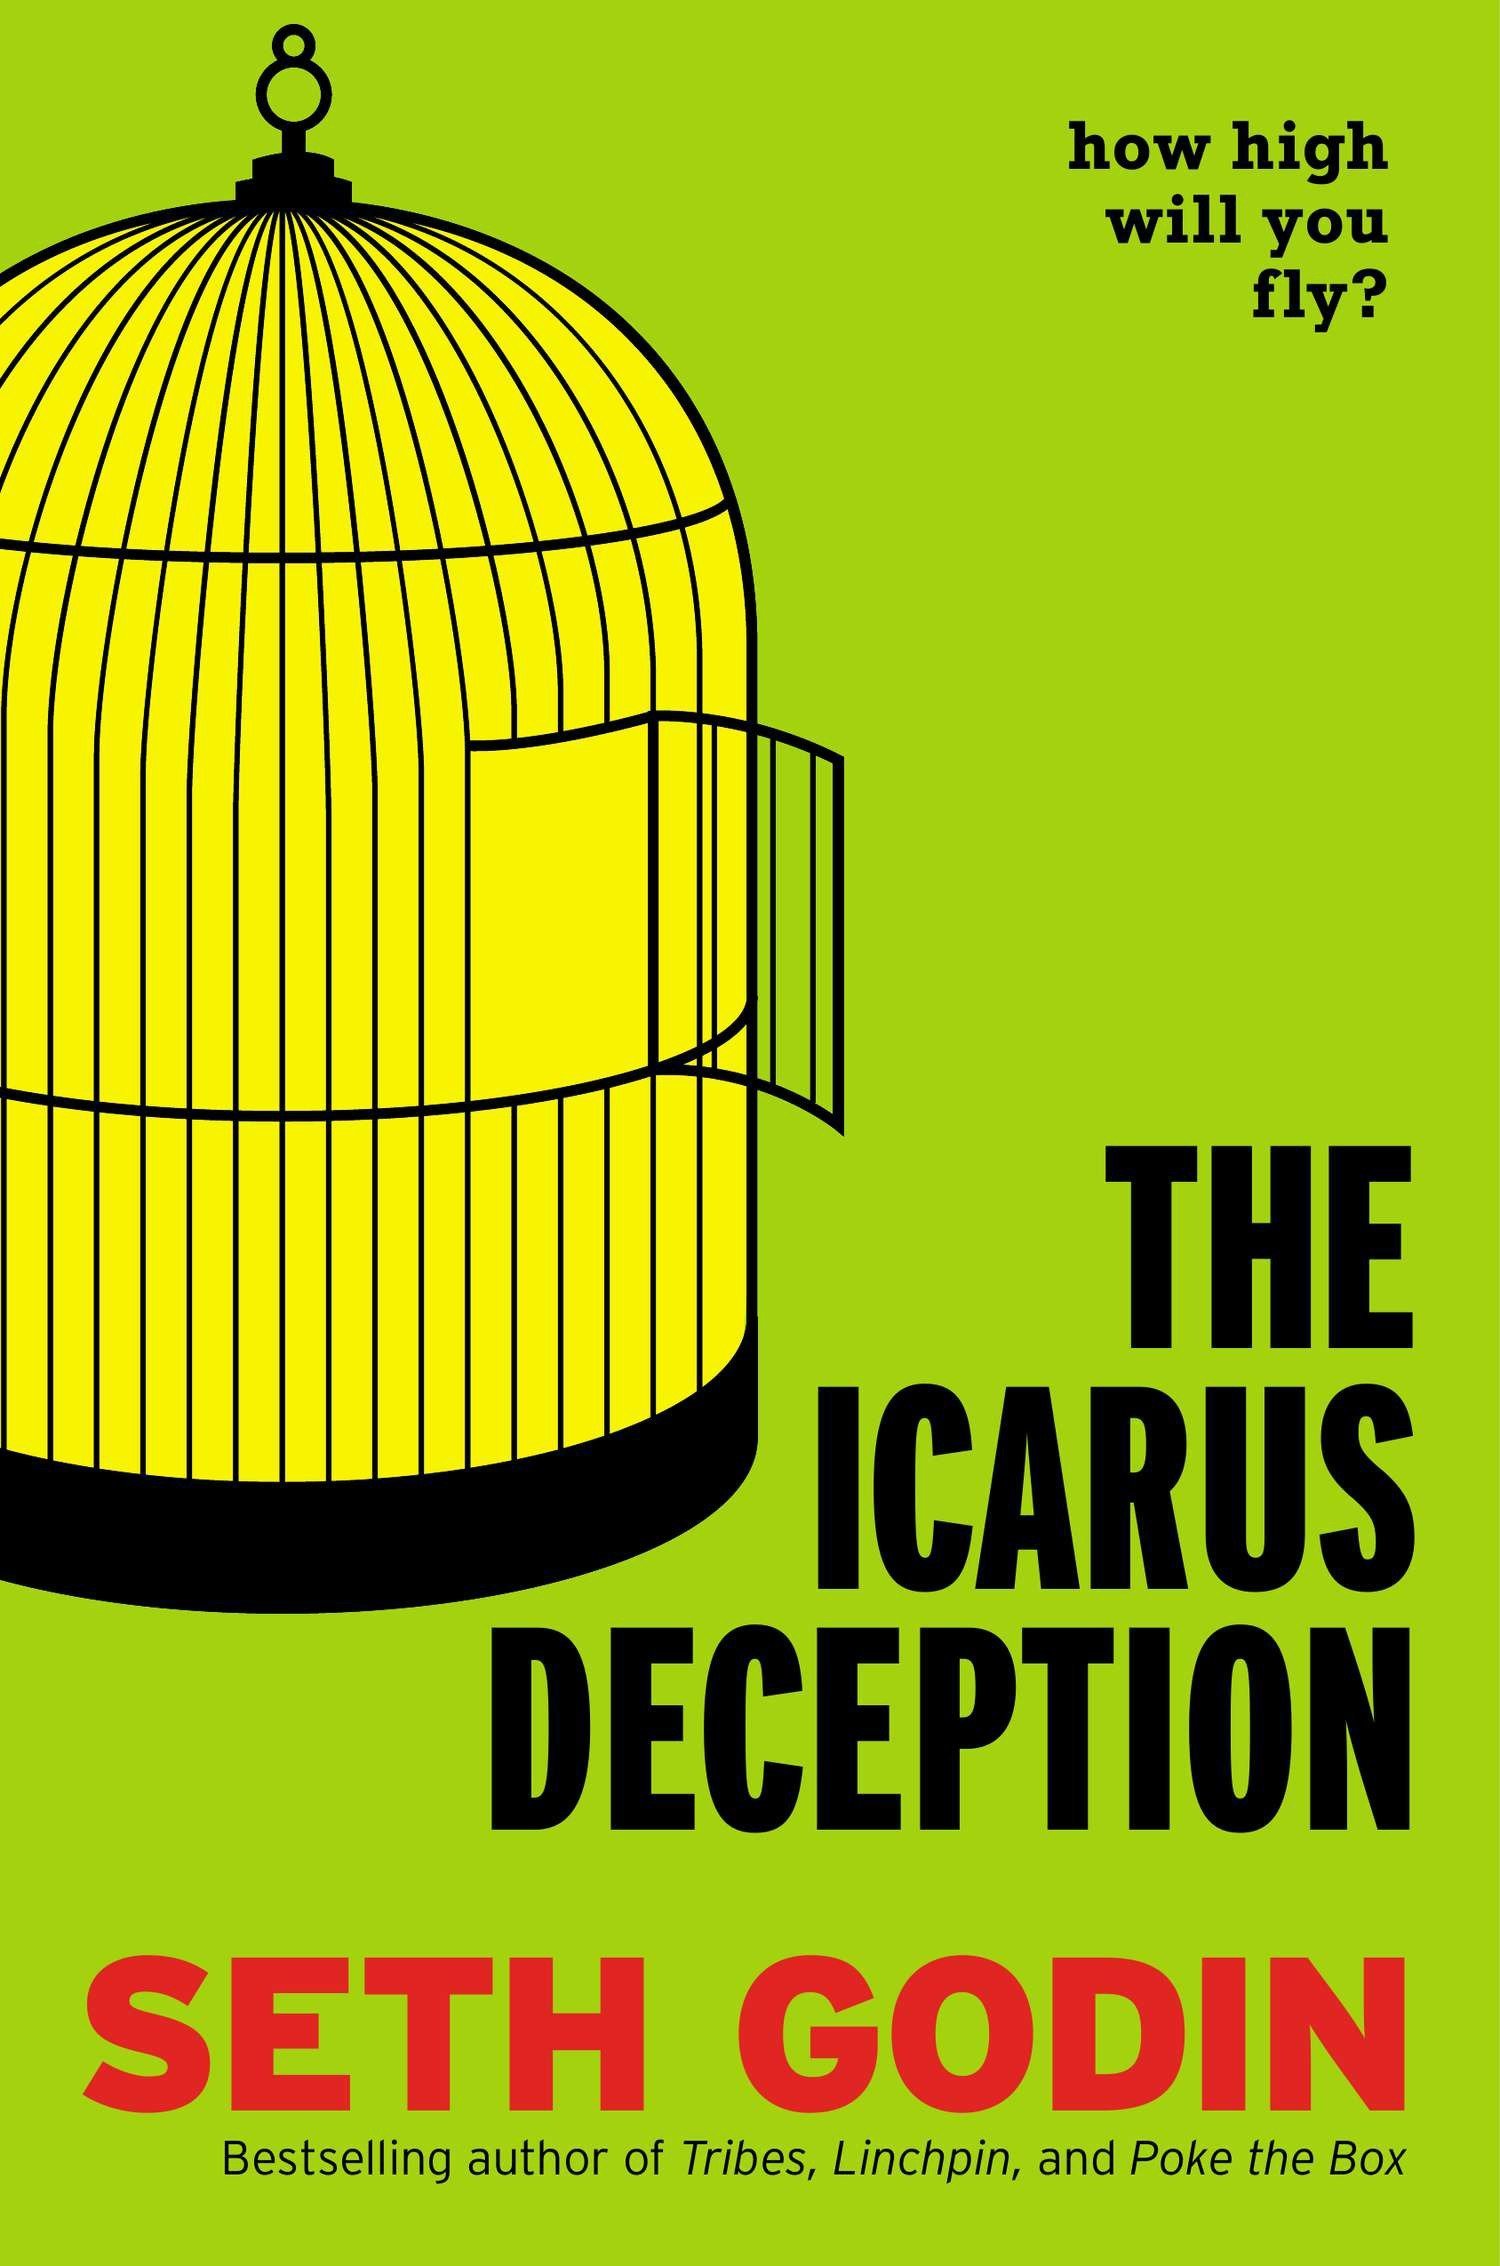 Icarus Deception (Source: Amazon)